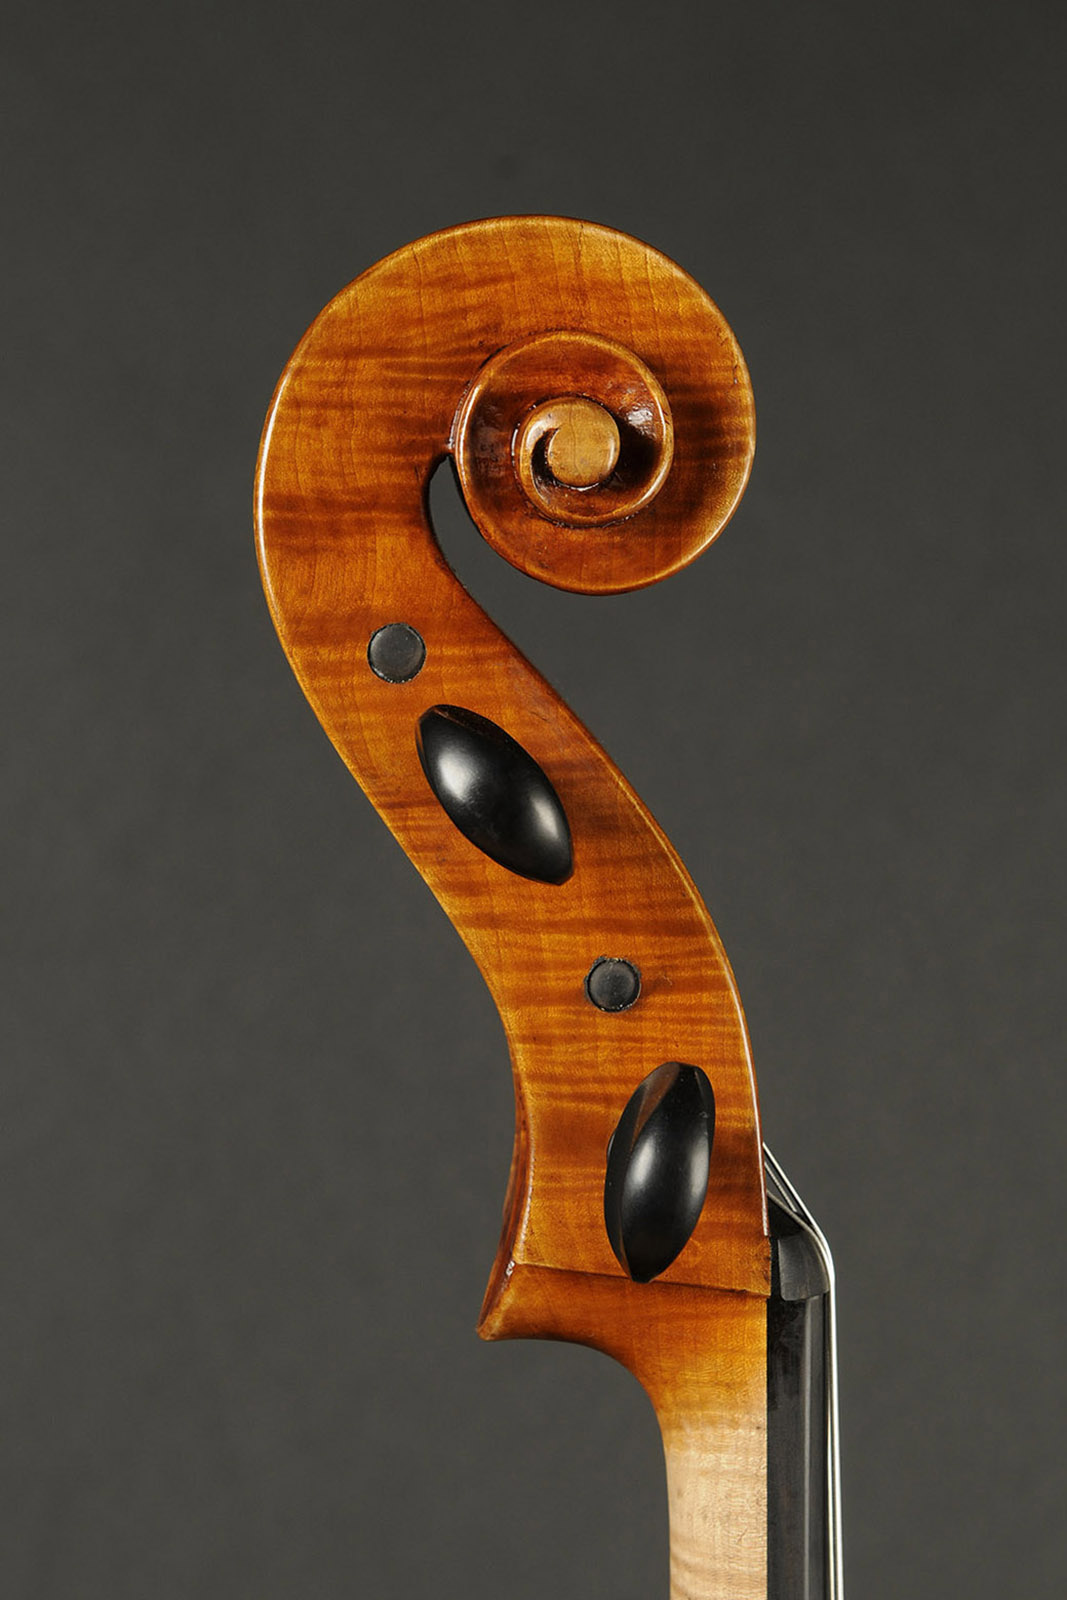 Antonio Stradivari Cremona 1730 “Feuermann“ “Fondo Unico“ - Image 6